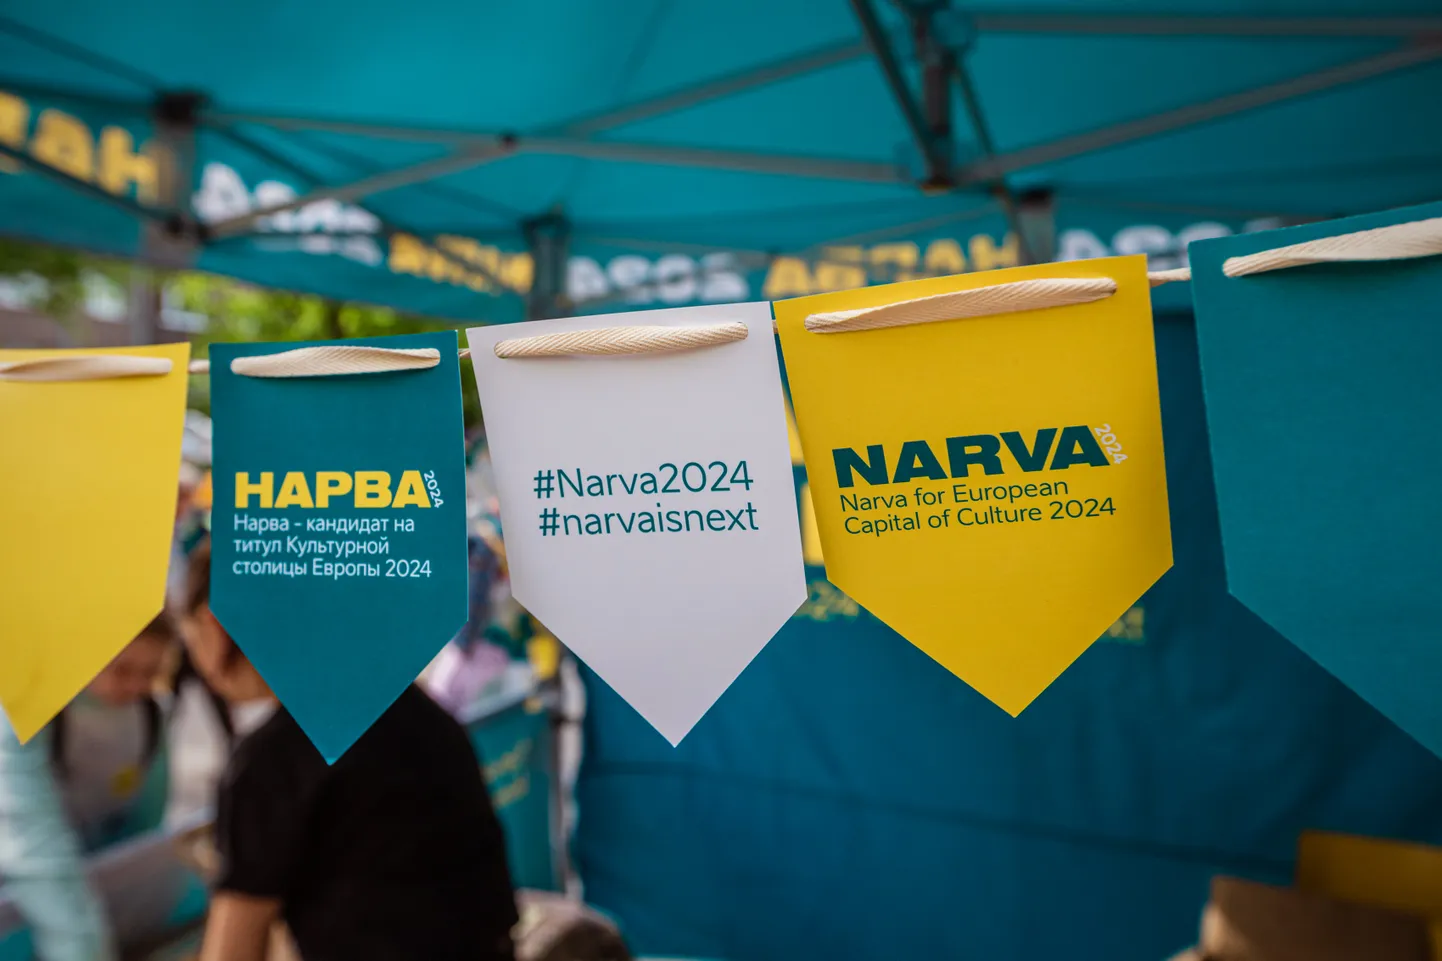 Нарва-2024 - Narva is next (Нарва следующая) - в этом лозунге пятилетней давности теперь можно узреть новый смысл.